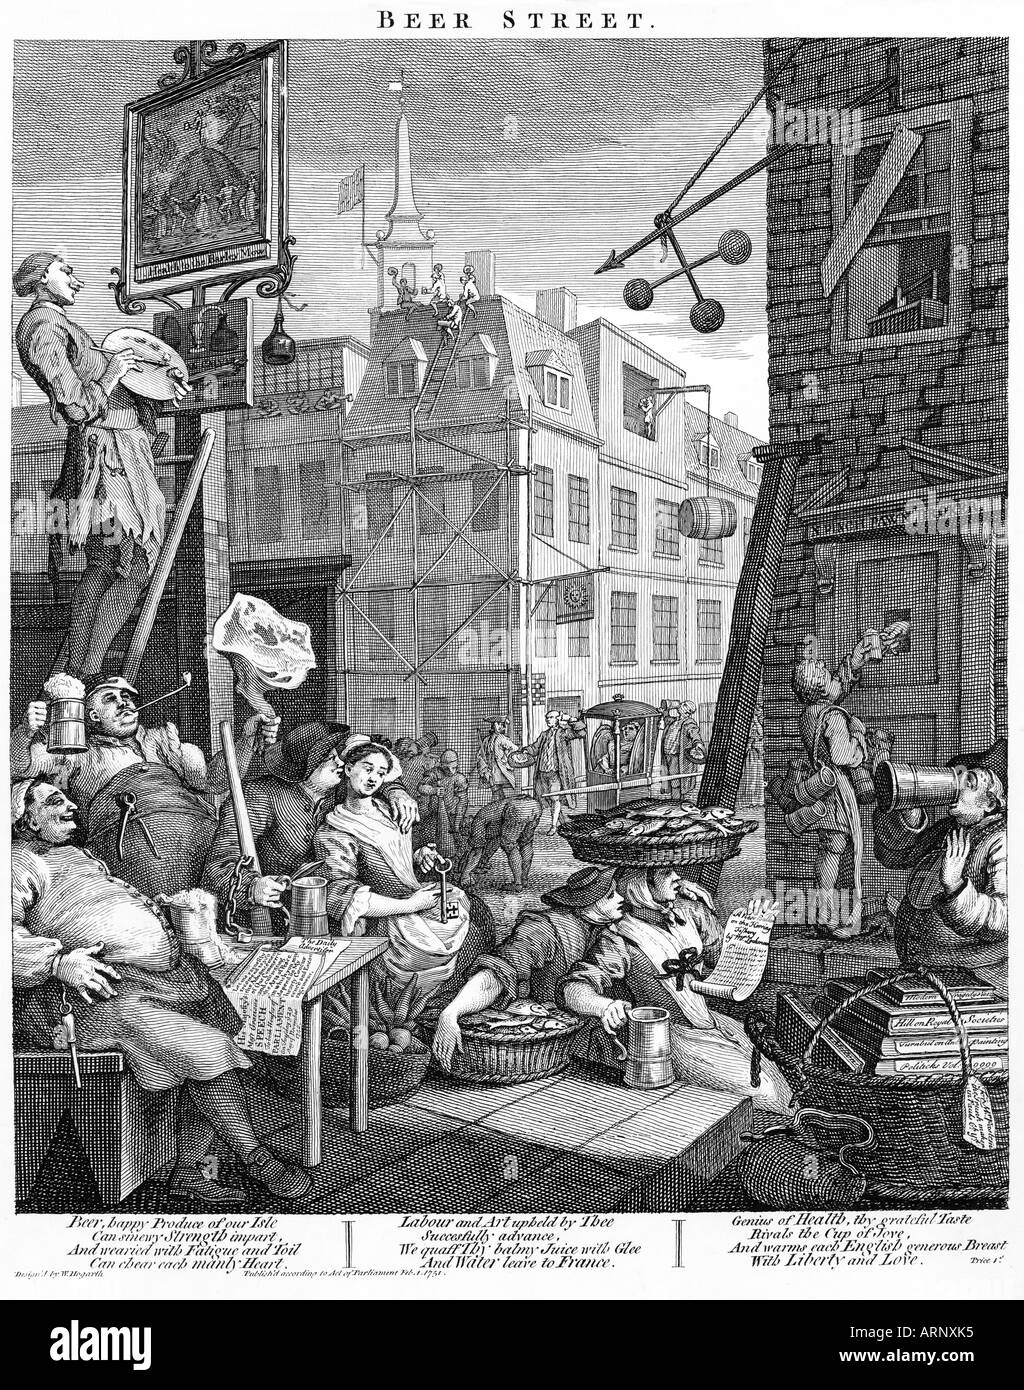 La birra Street William Hogarth terzo membro del famoso 1751 incisione prodotta a esaltare il sano consumo di birra Foto Stock